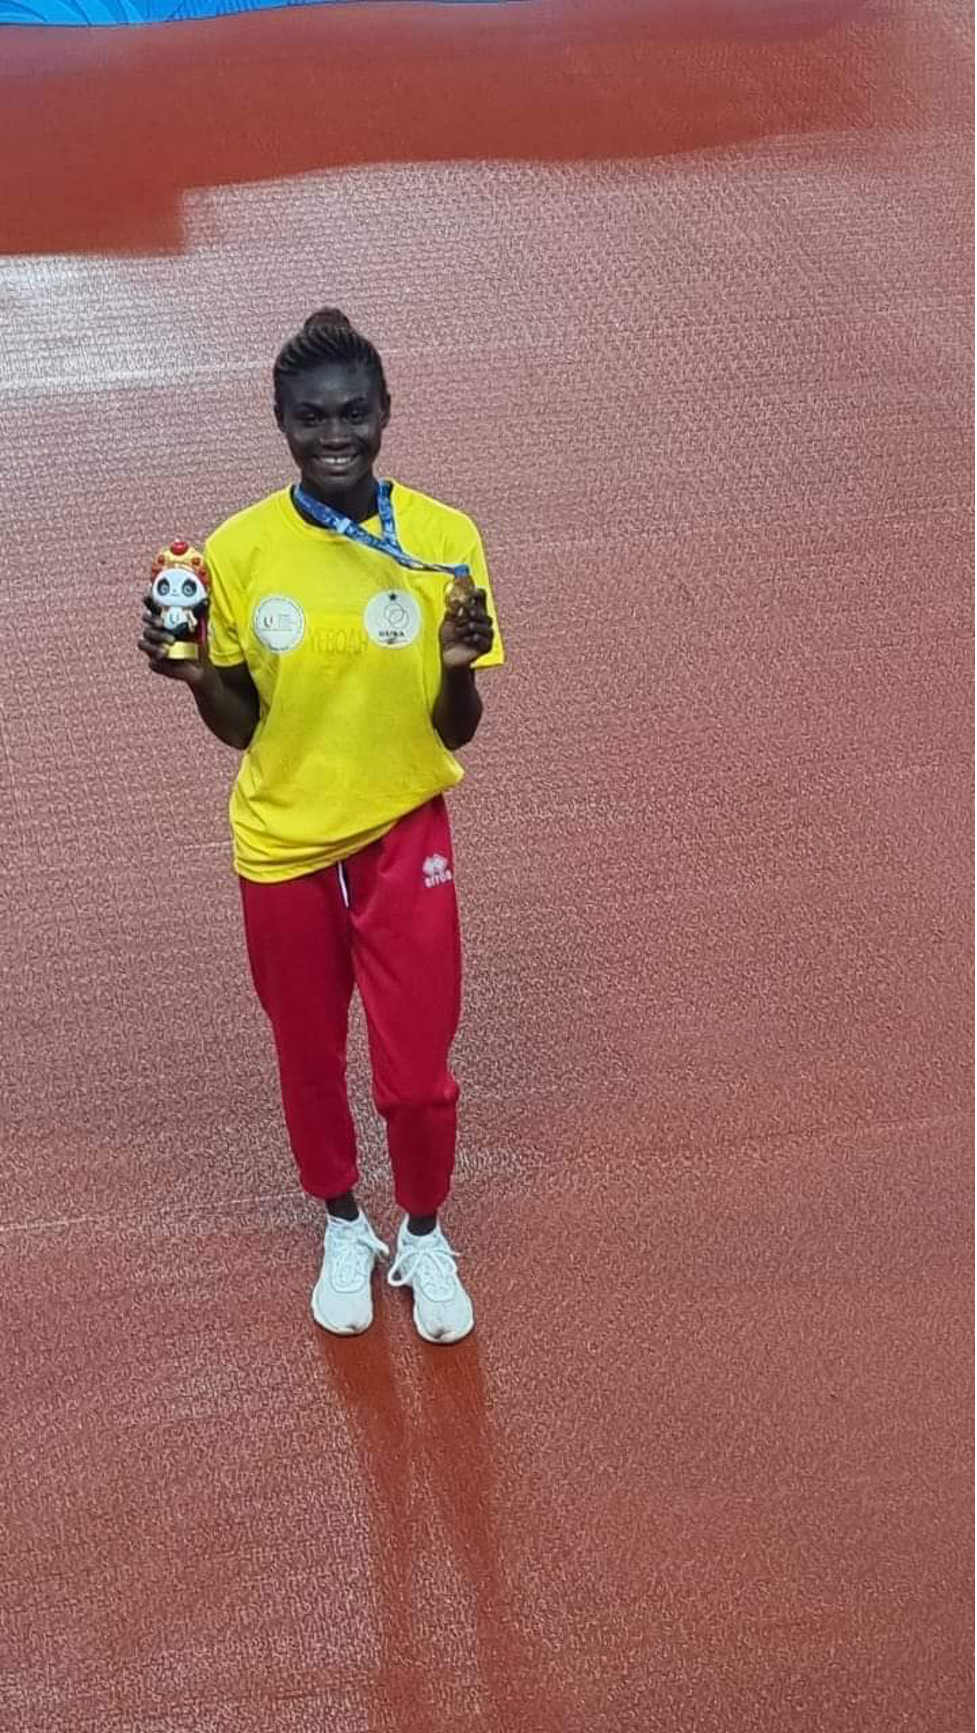 Rose Amoaniwaa Yeboah displaying her gold medal